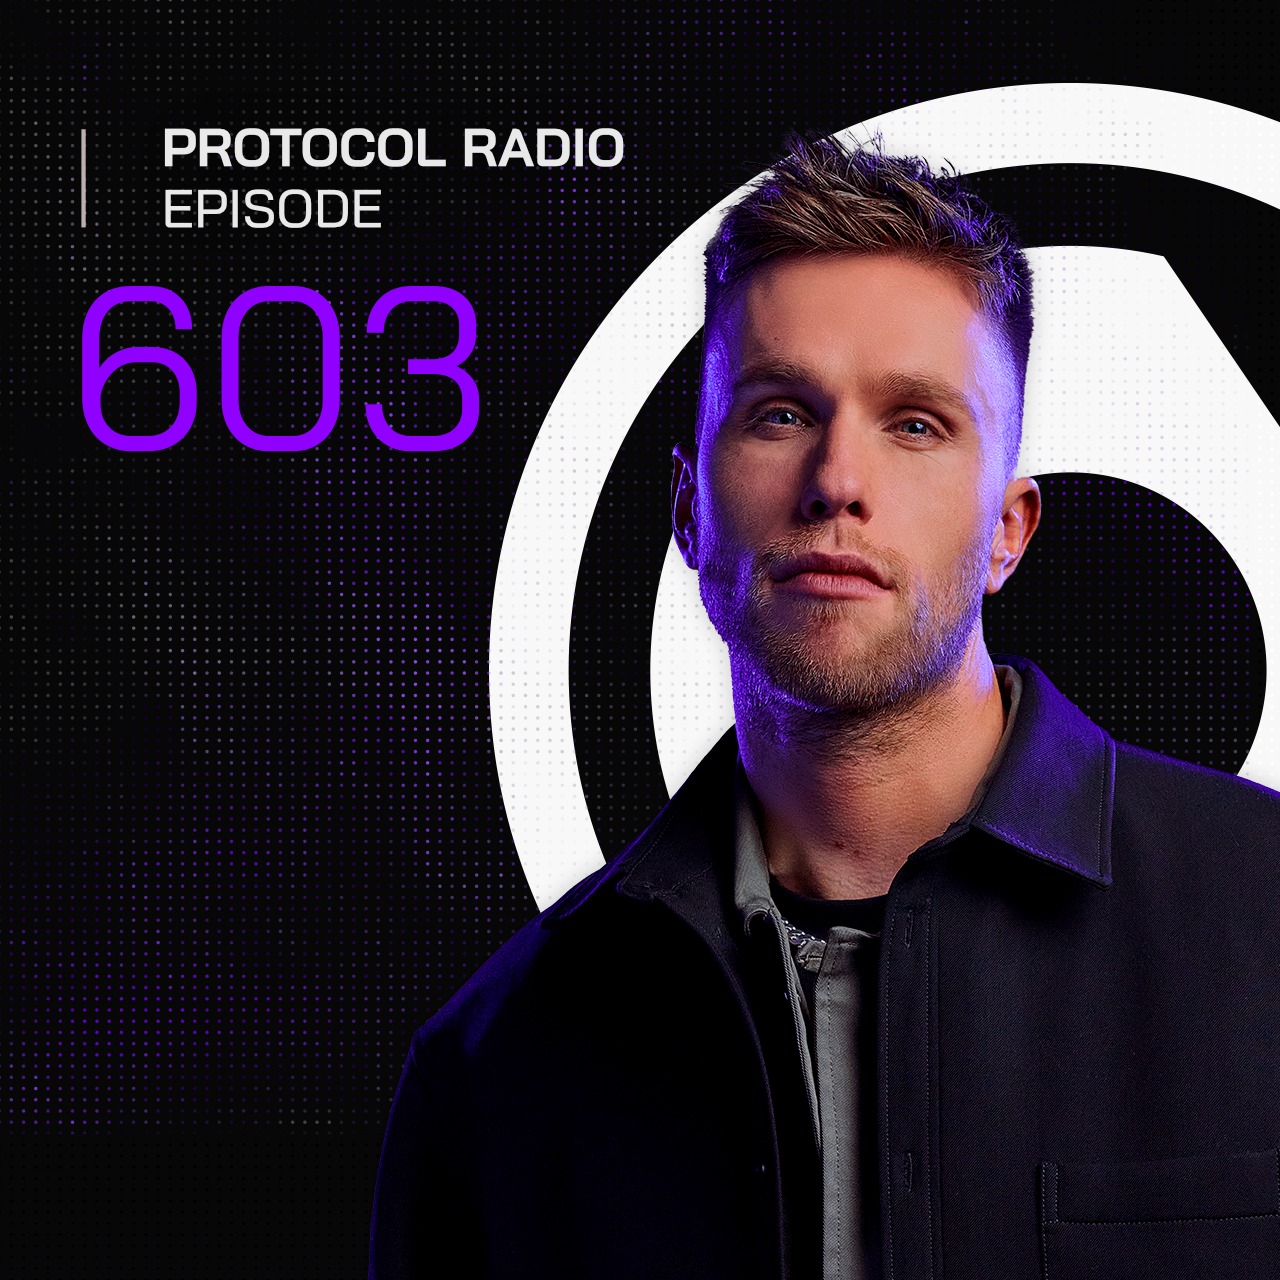 Protocol Radio #603